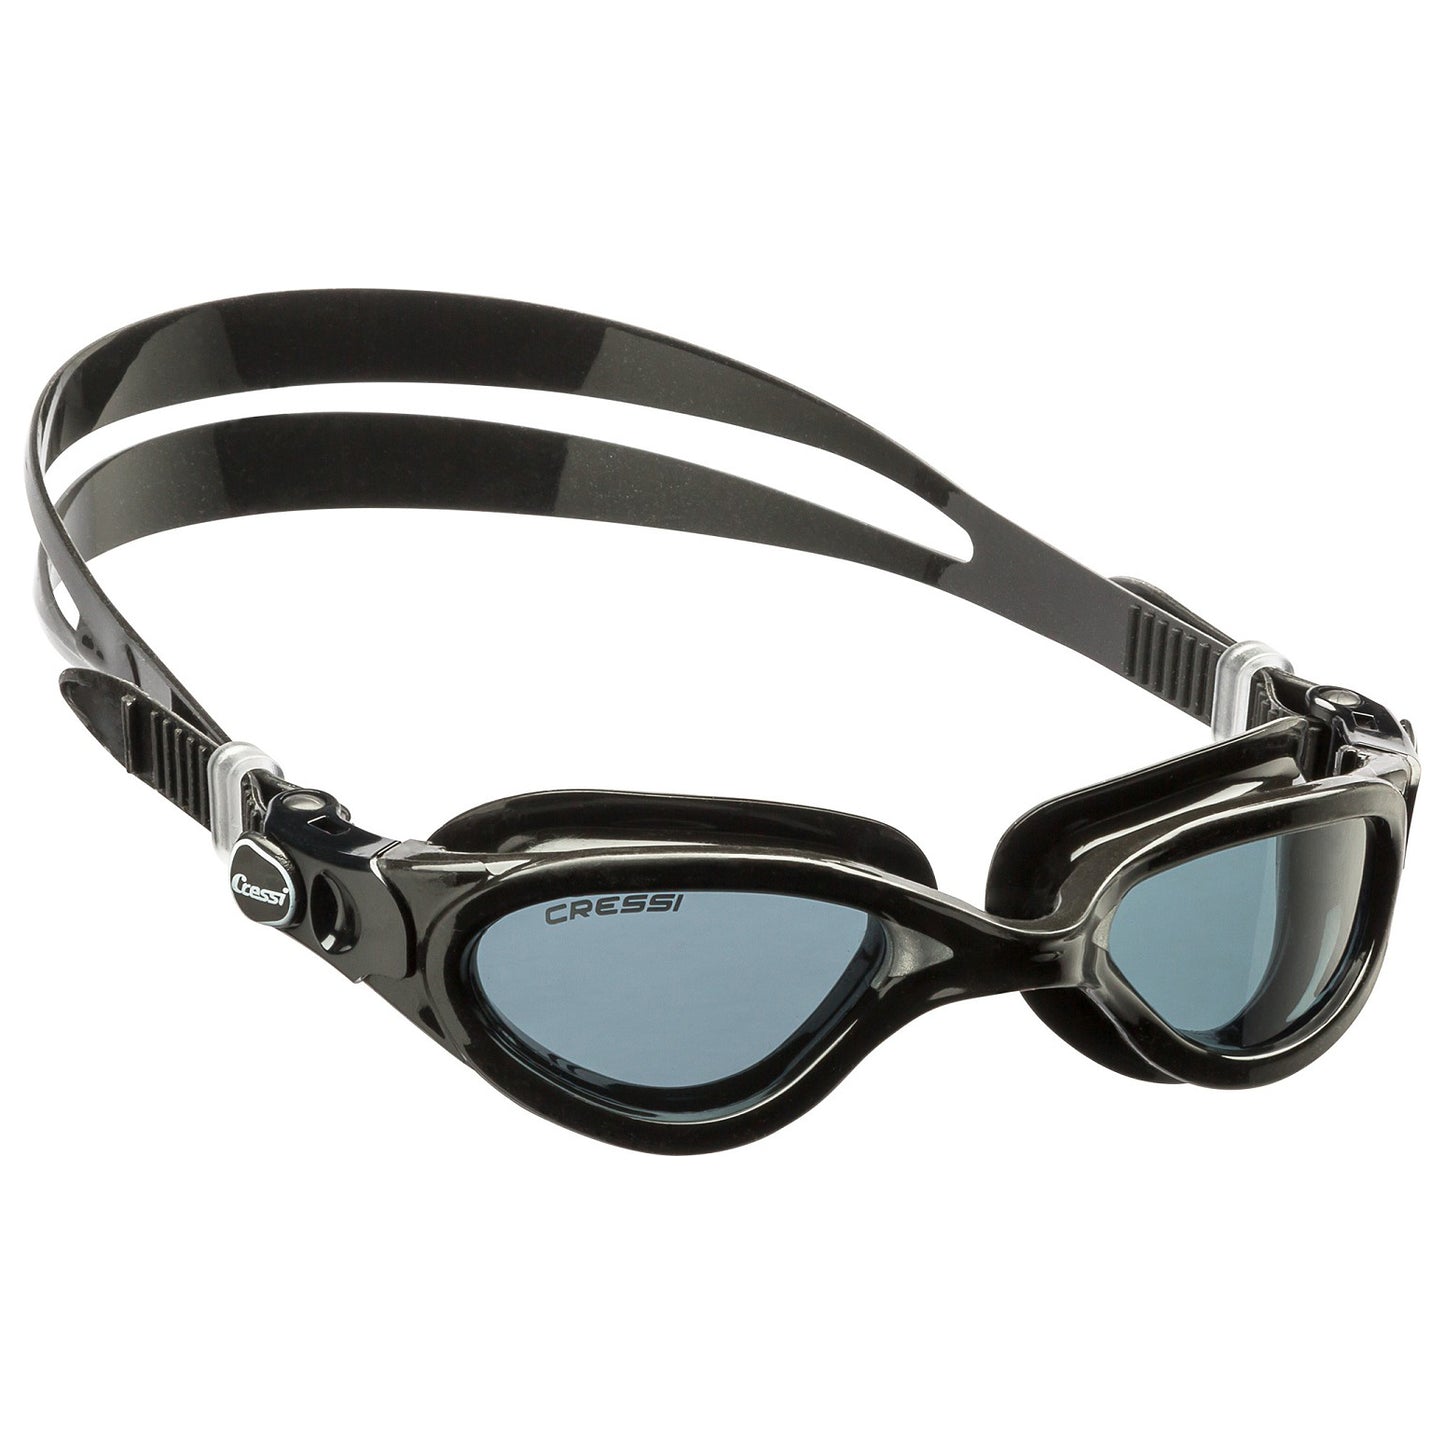 Cressi Flash gafas de natación mujer